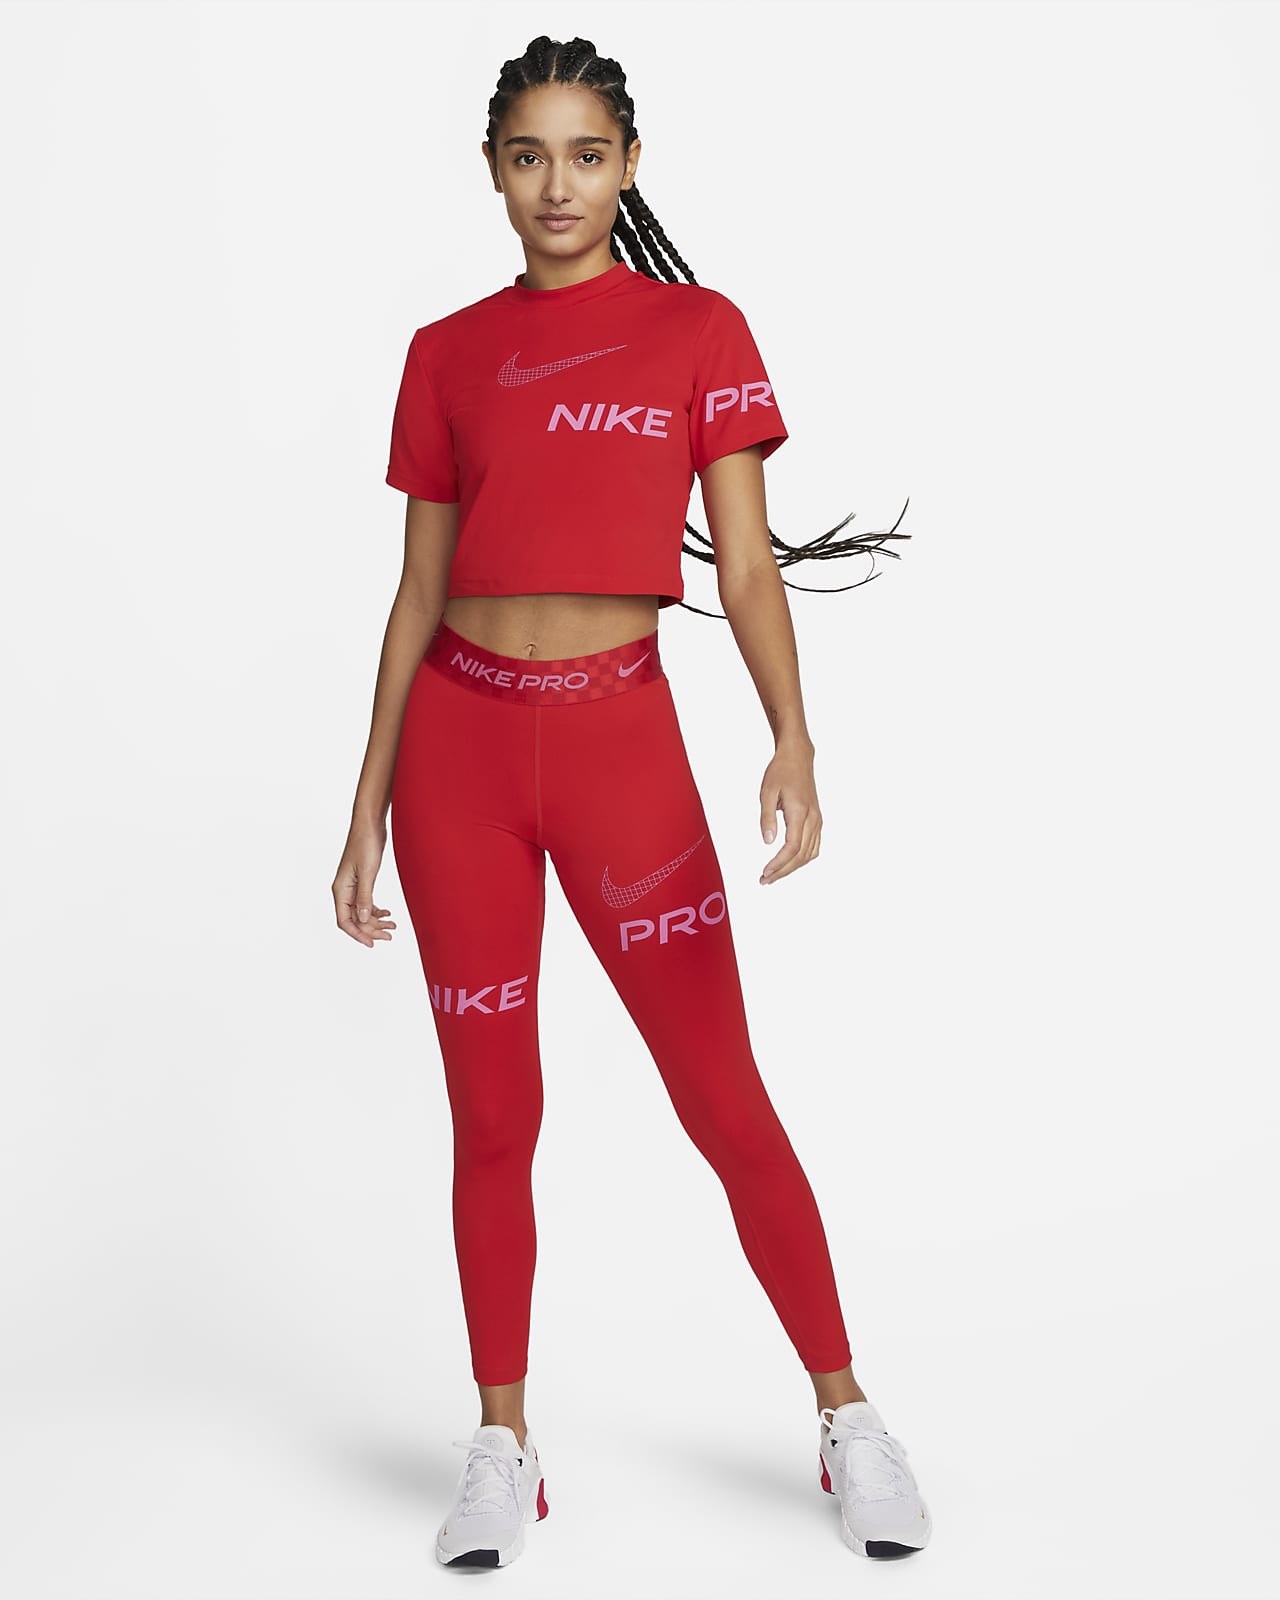 Nike Womens Pro 365 Leggings - Navy, white navy blue and red jordan  sandals